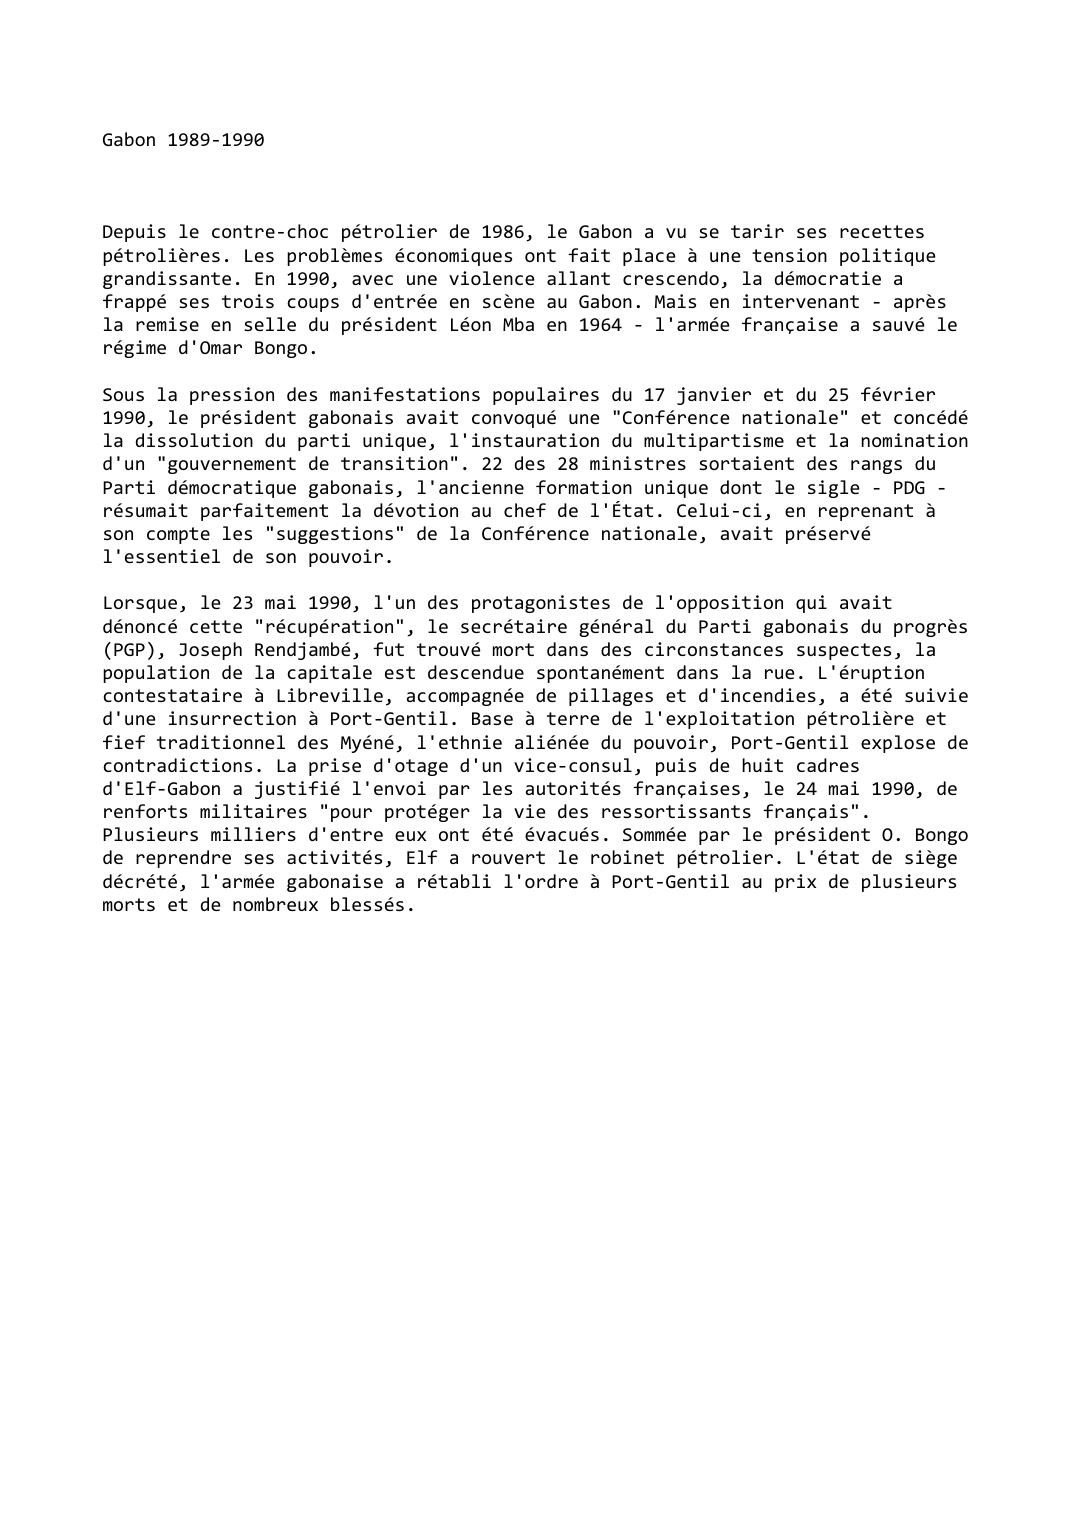 Prévisualisation du document Gabon (1989-1990)